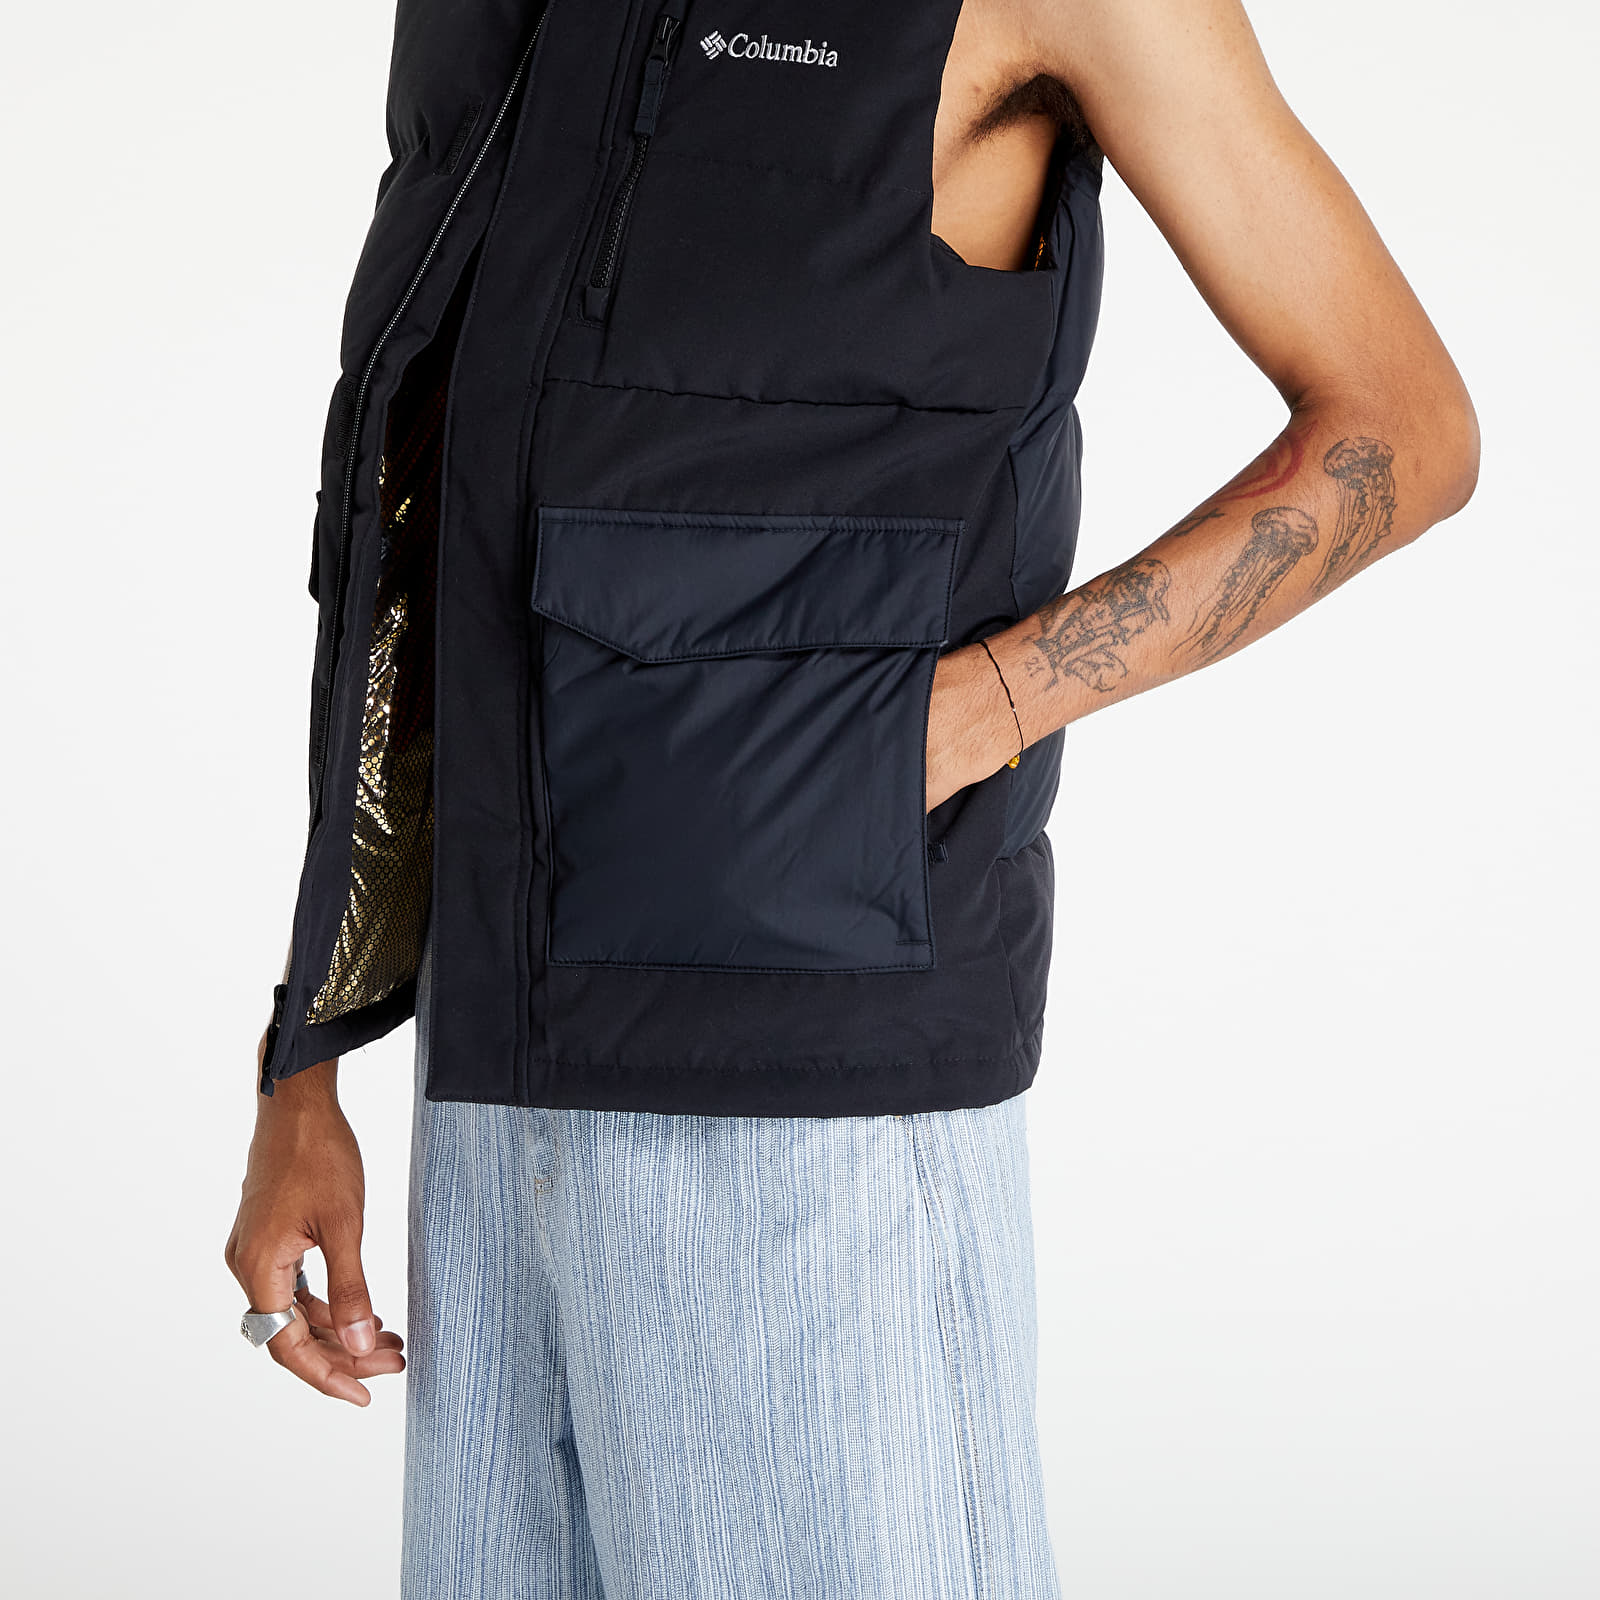 Columbia Men's Marquam Peak Fusion Vest, Delta/Black, Small : :  Clothing, Shoes & Accessories